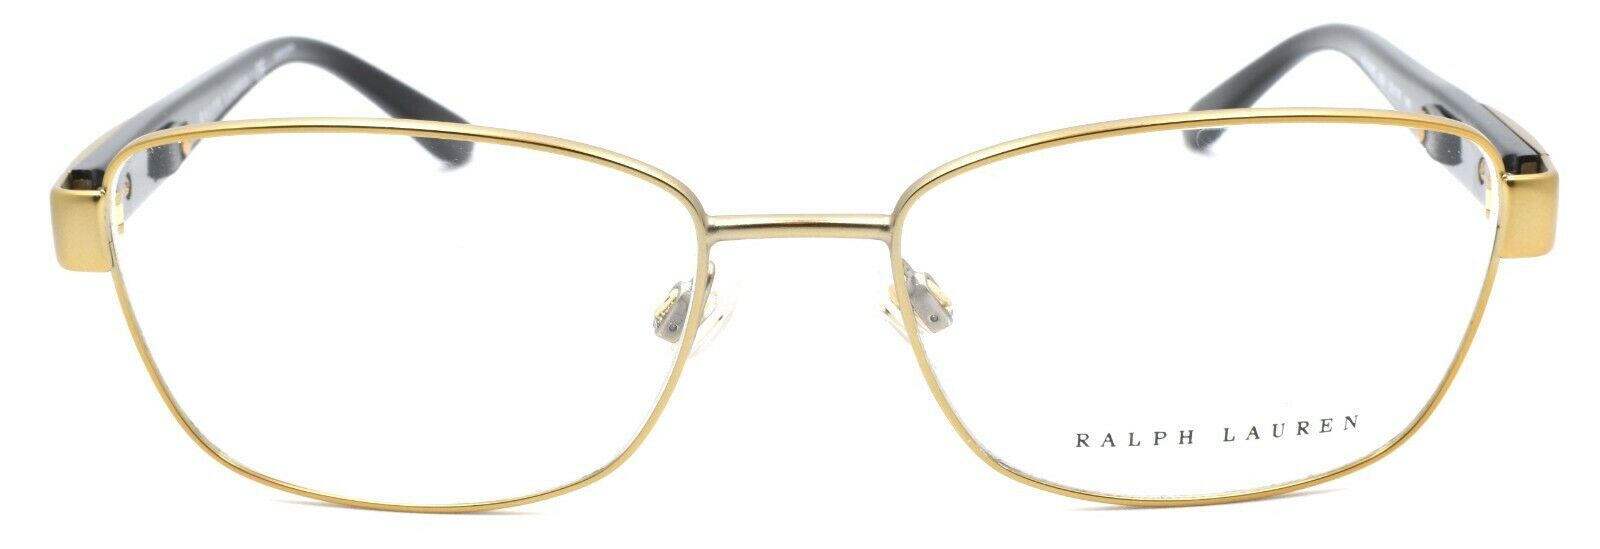 2-Ralph Lauren RL5096Q 9324 Women's Eyeglasses Frames 52-16-140 Antique Brass-8053672643374-IKSpecs